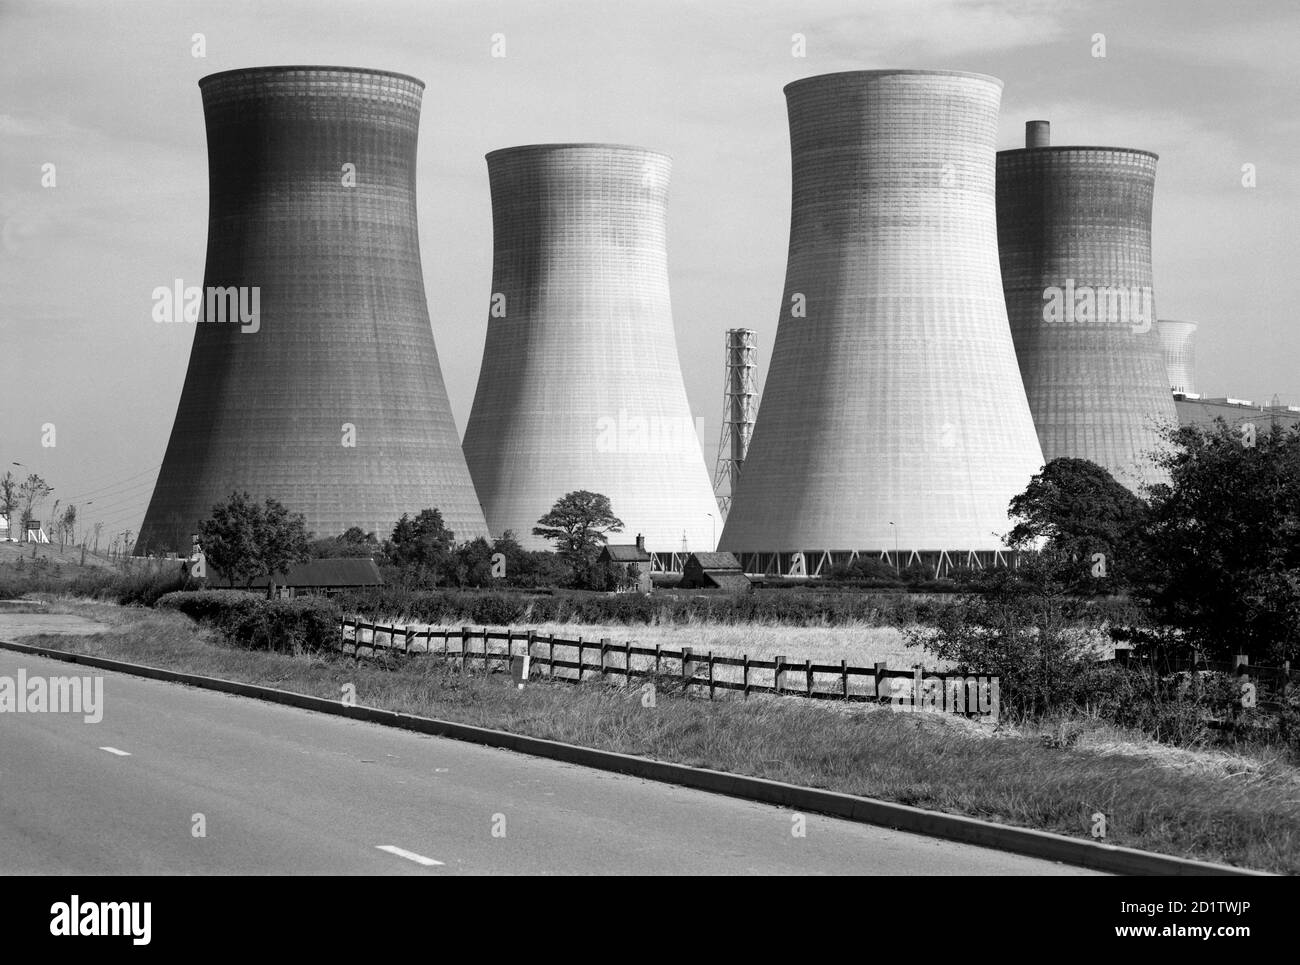 Lincolnshire. Vista general que muestra las torres de refrigeración en una central eléctrica no identificada. Fotografiado por Eric de Mare. Foto de stock